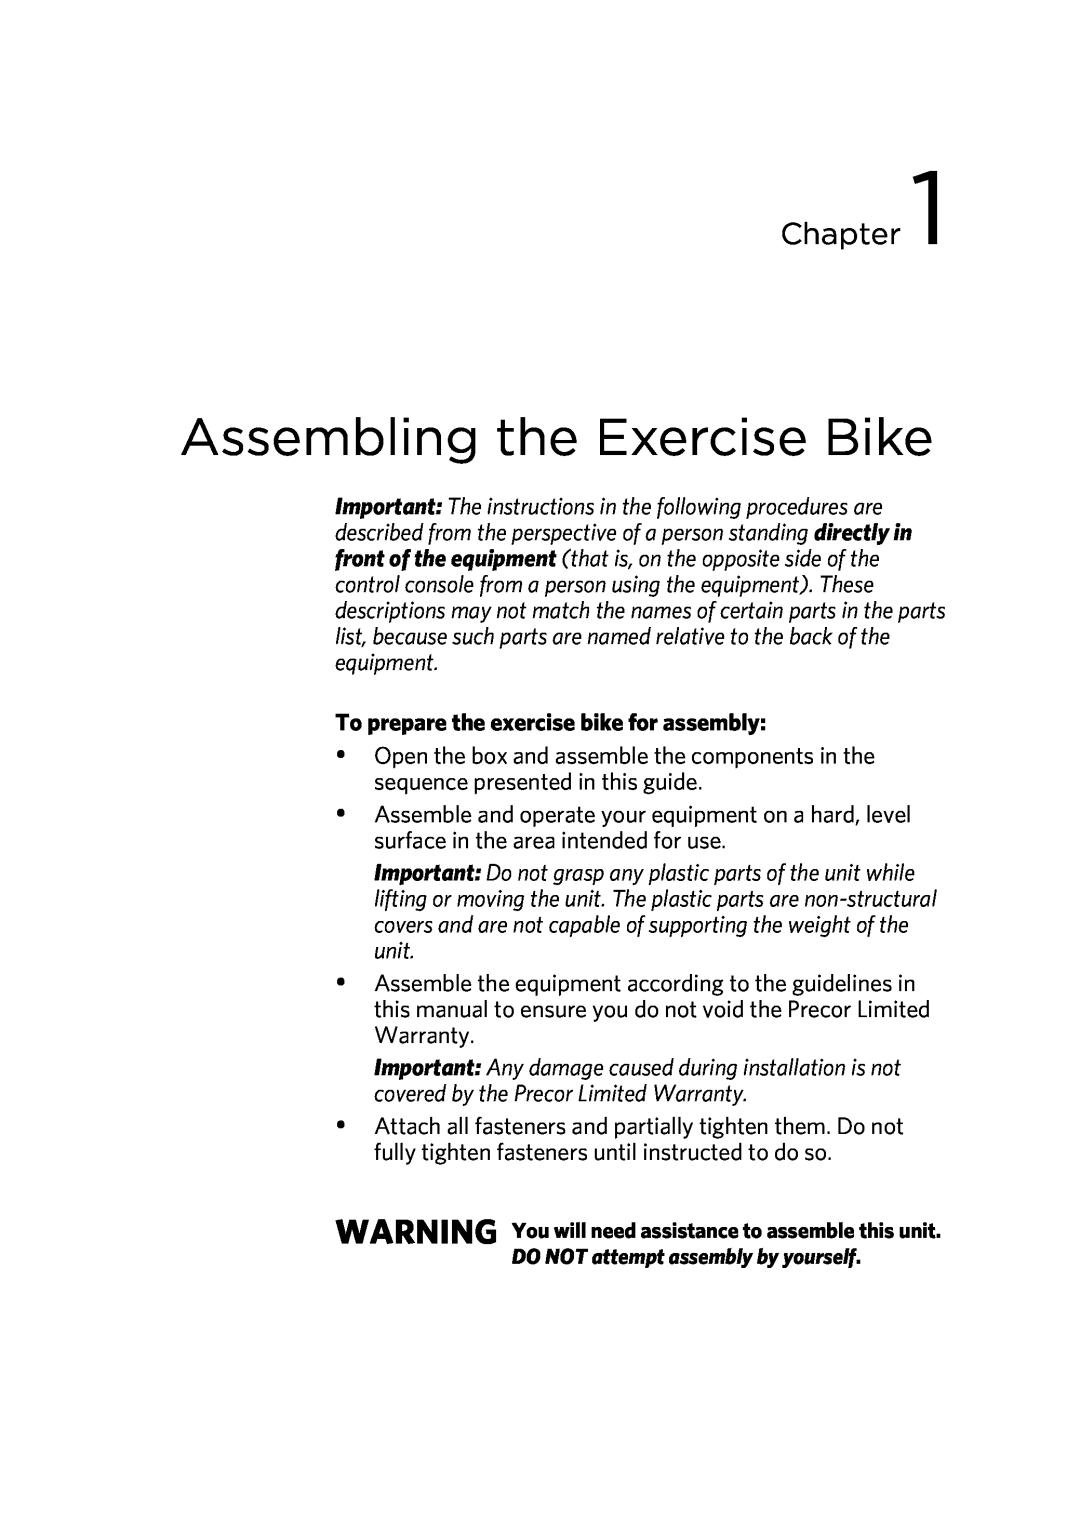 Precor P30 manual Assembling the Exercise Bike, To prepare the exercise bike for assembly, Chapter 